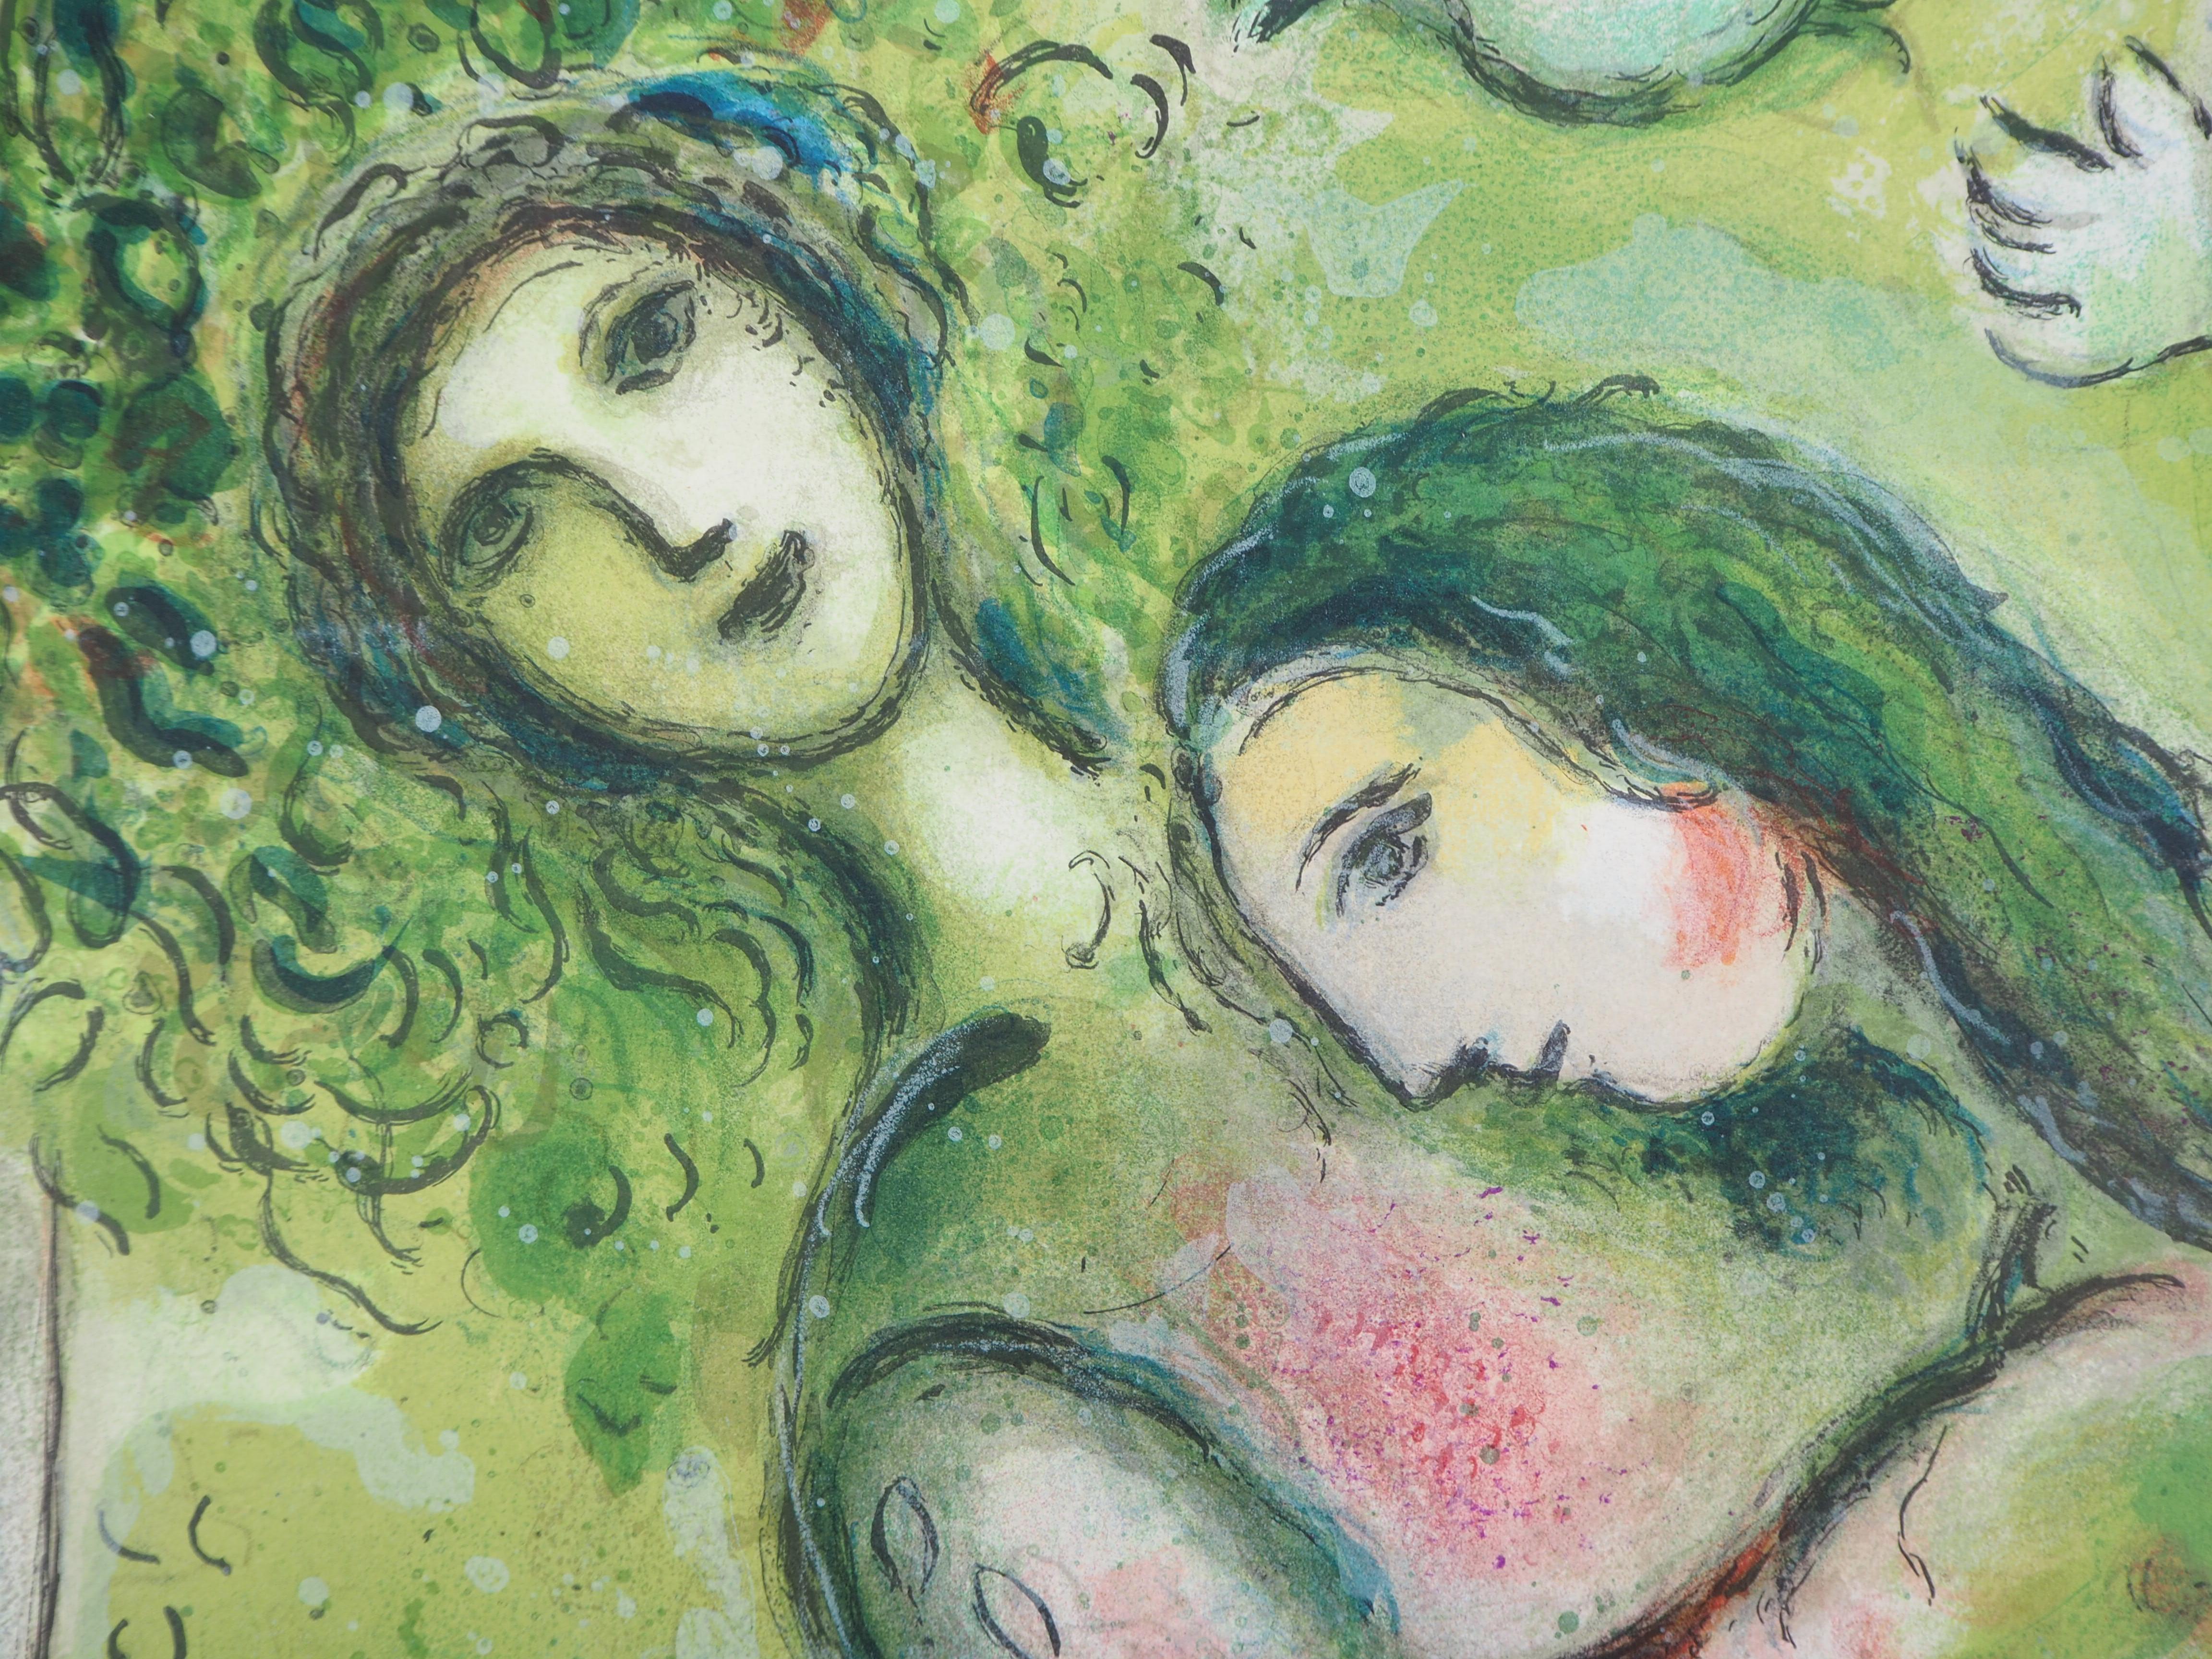 Marc Chagall (après)
Roméo et Juliette (Opéra de Paris), 1965

Lithographie sur pierre (atelier Mourlot)
Gravure de Charles Sorlier sous la supervision de Chagall
Sur papier épais 64 x 99 cm (environ 26 x 40 pouces)

REFERENCES : Catalogue raisonné